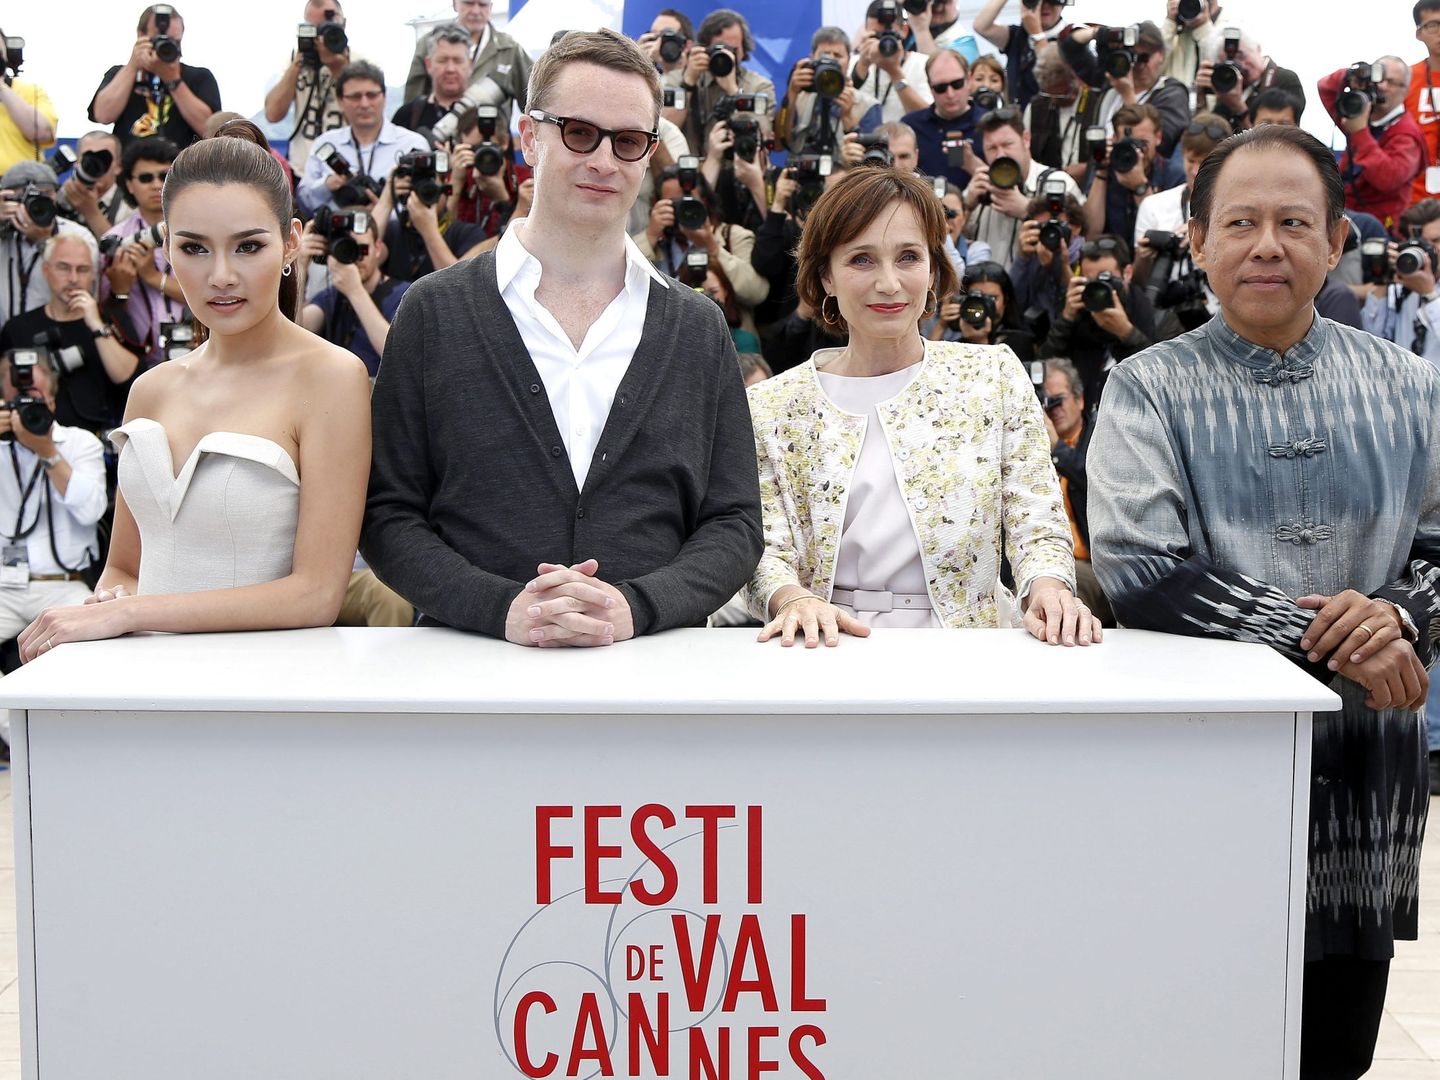 El director danés Nicolas Winding Refn, segundo por la derecha, en Cannes 2013. (Efe)